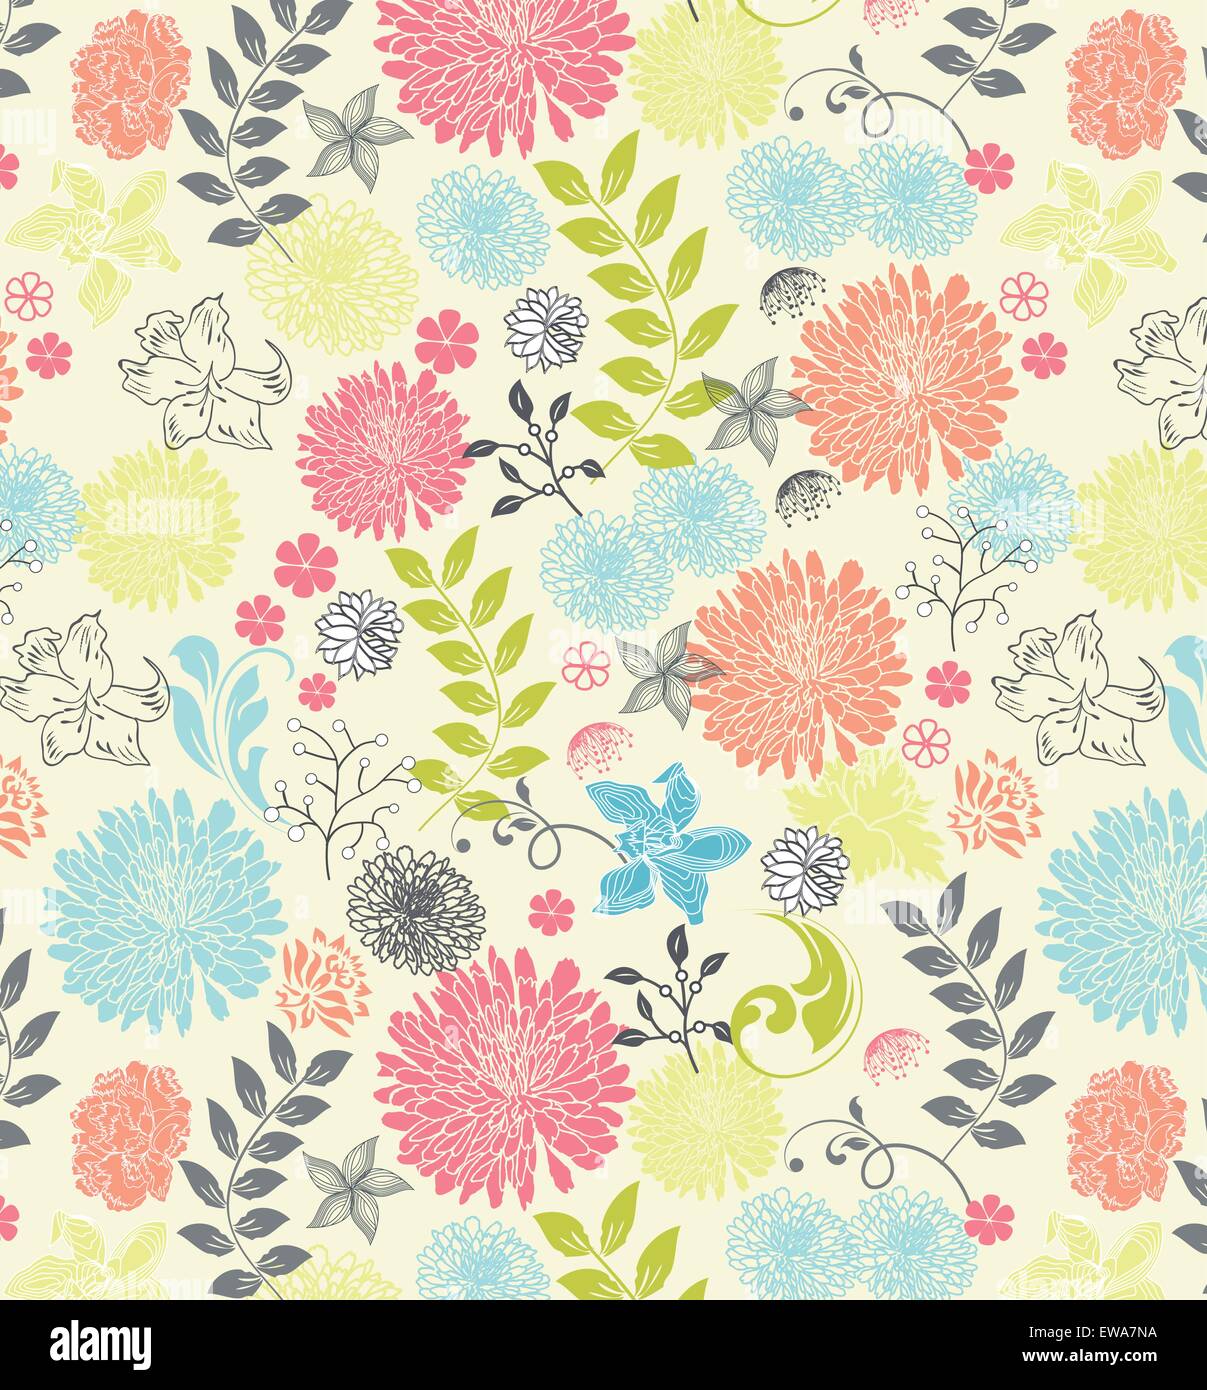 Vintage-Hintergrund mit reich verzierten eleganten Retro-abstrakten floralen Design, bunten Blumen und Blätter auf hellgelb. Vektor-Illustration. Stock Vektor